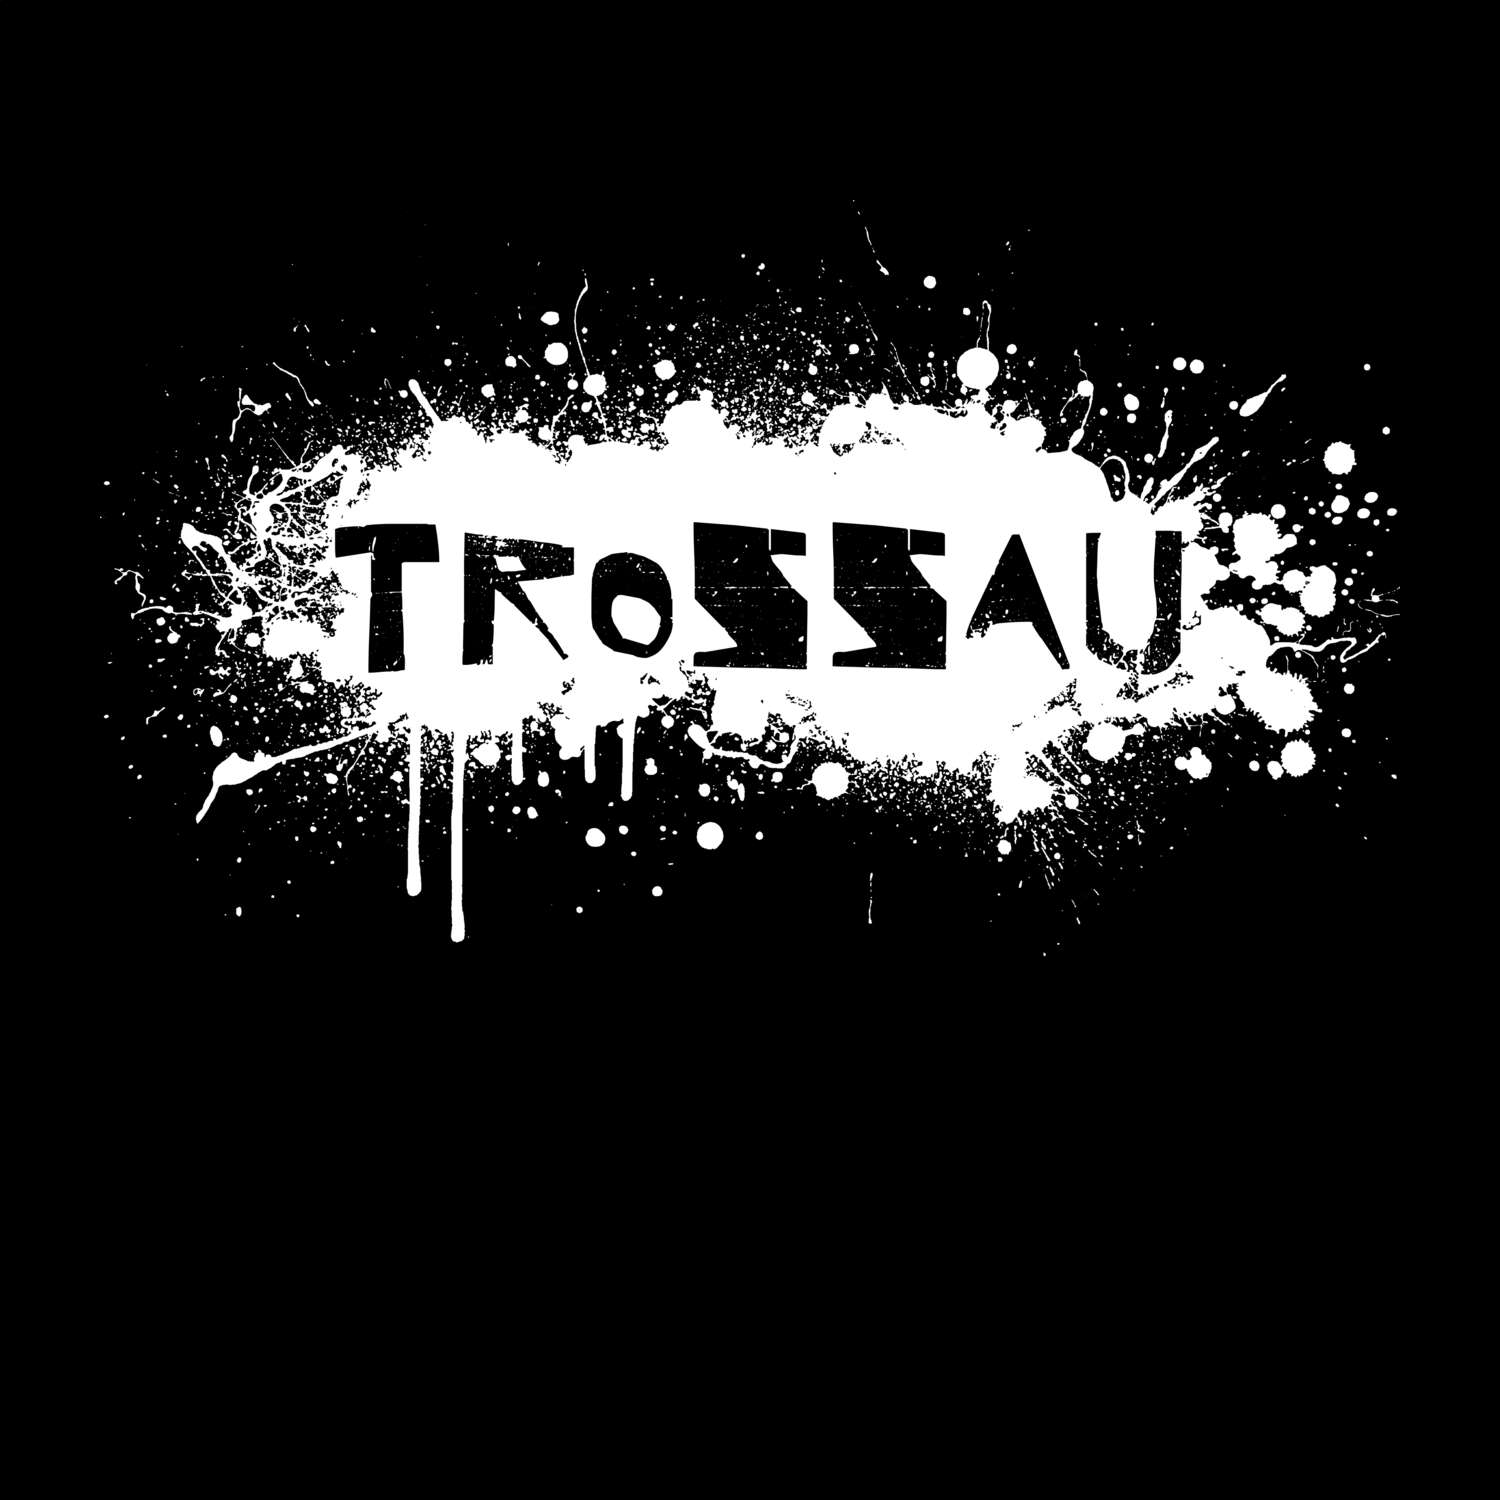 Trossau T-Shirt »Paint Splash Punk«